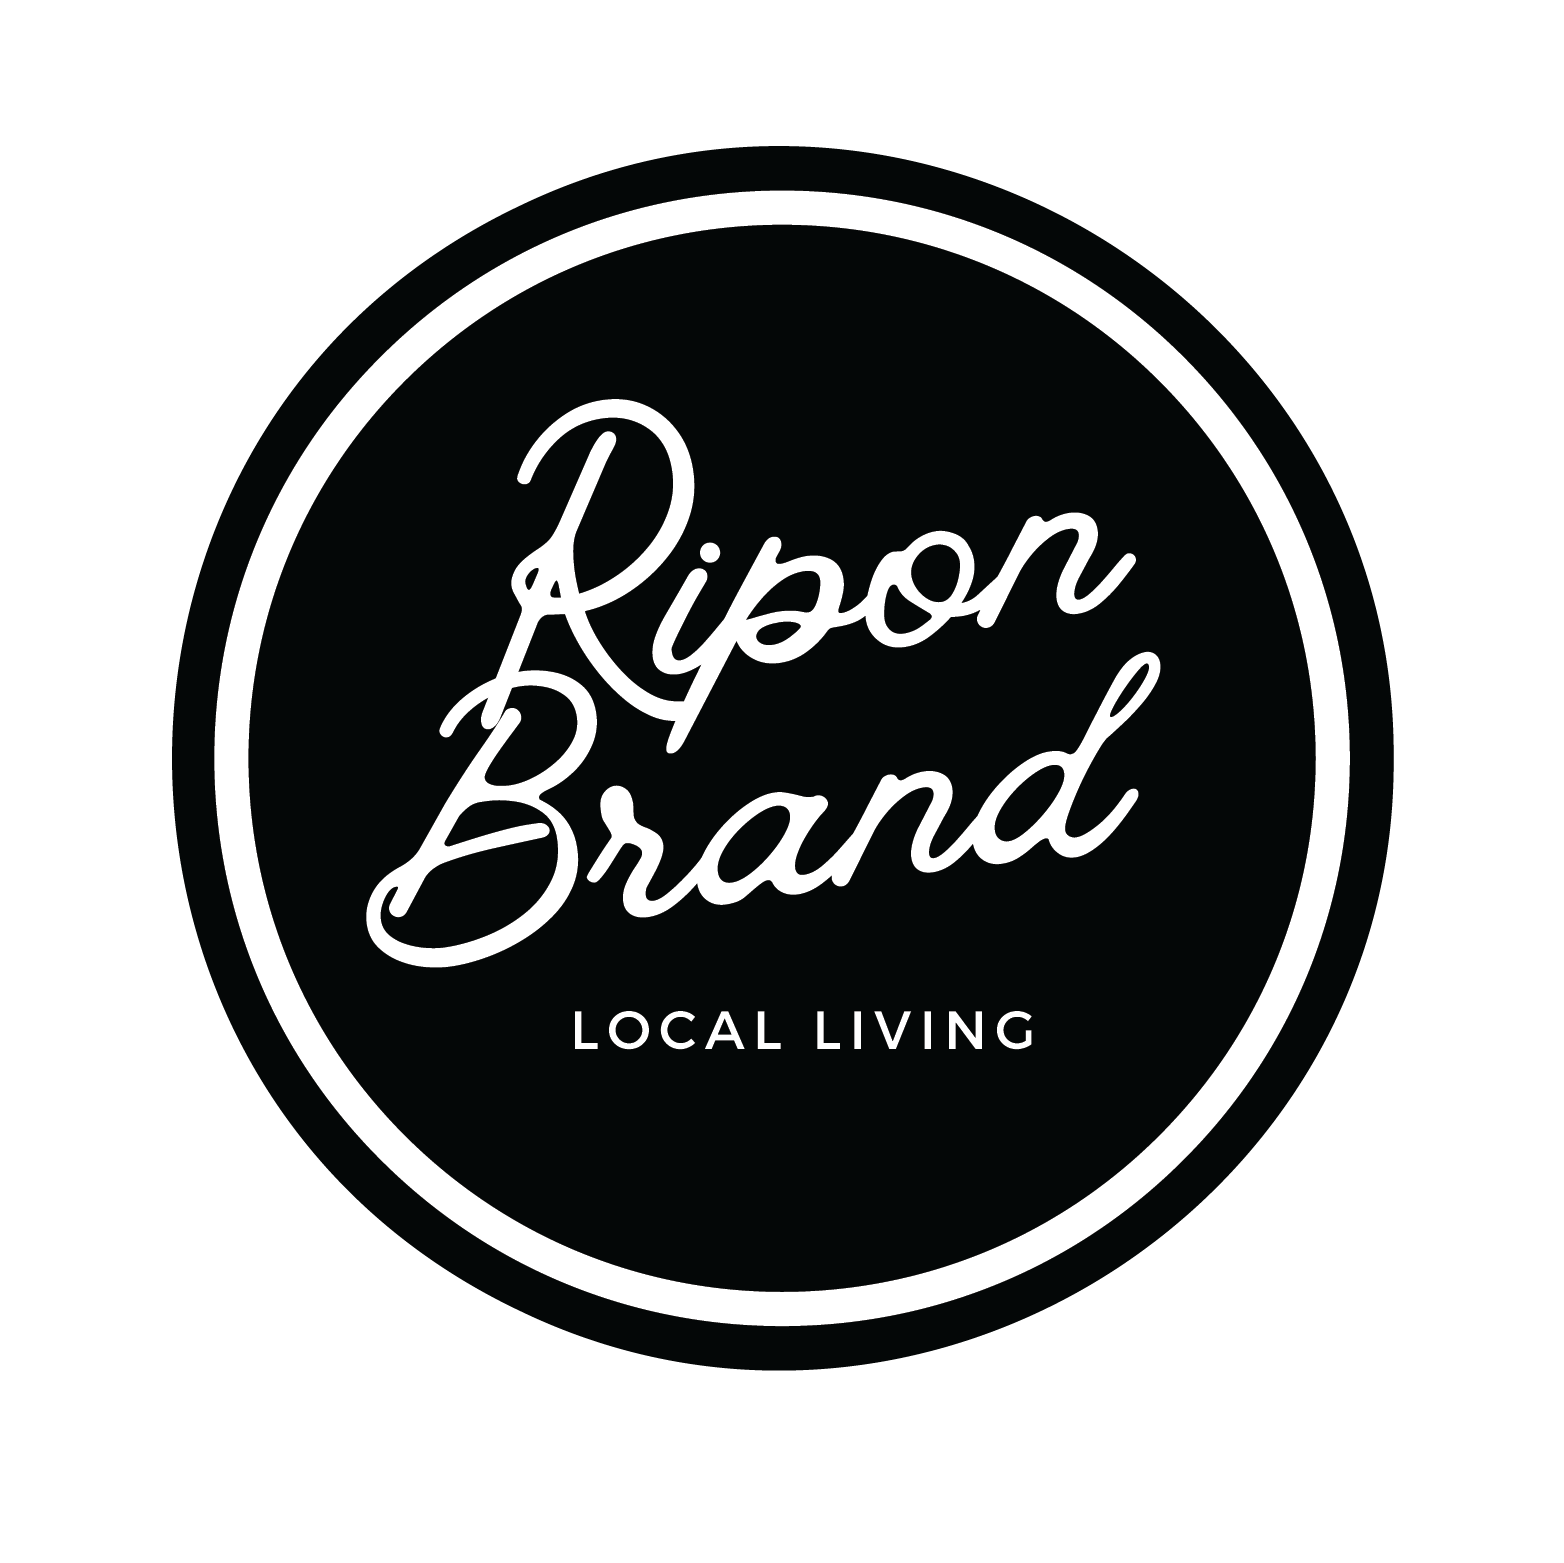 Ripon Brand